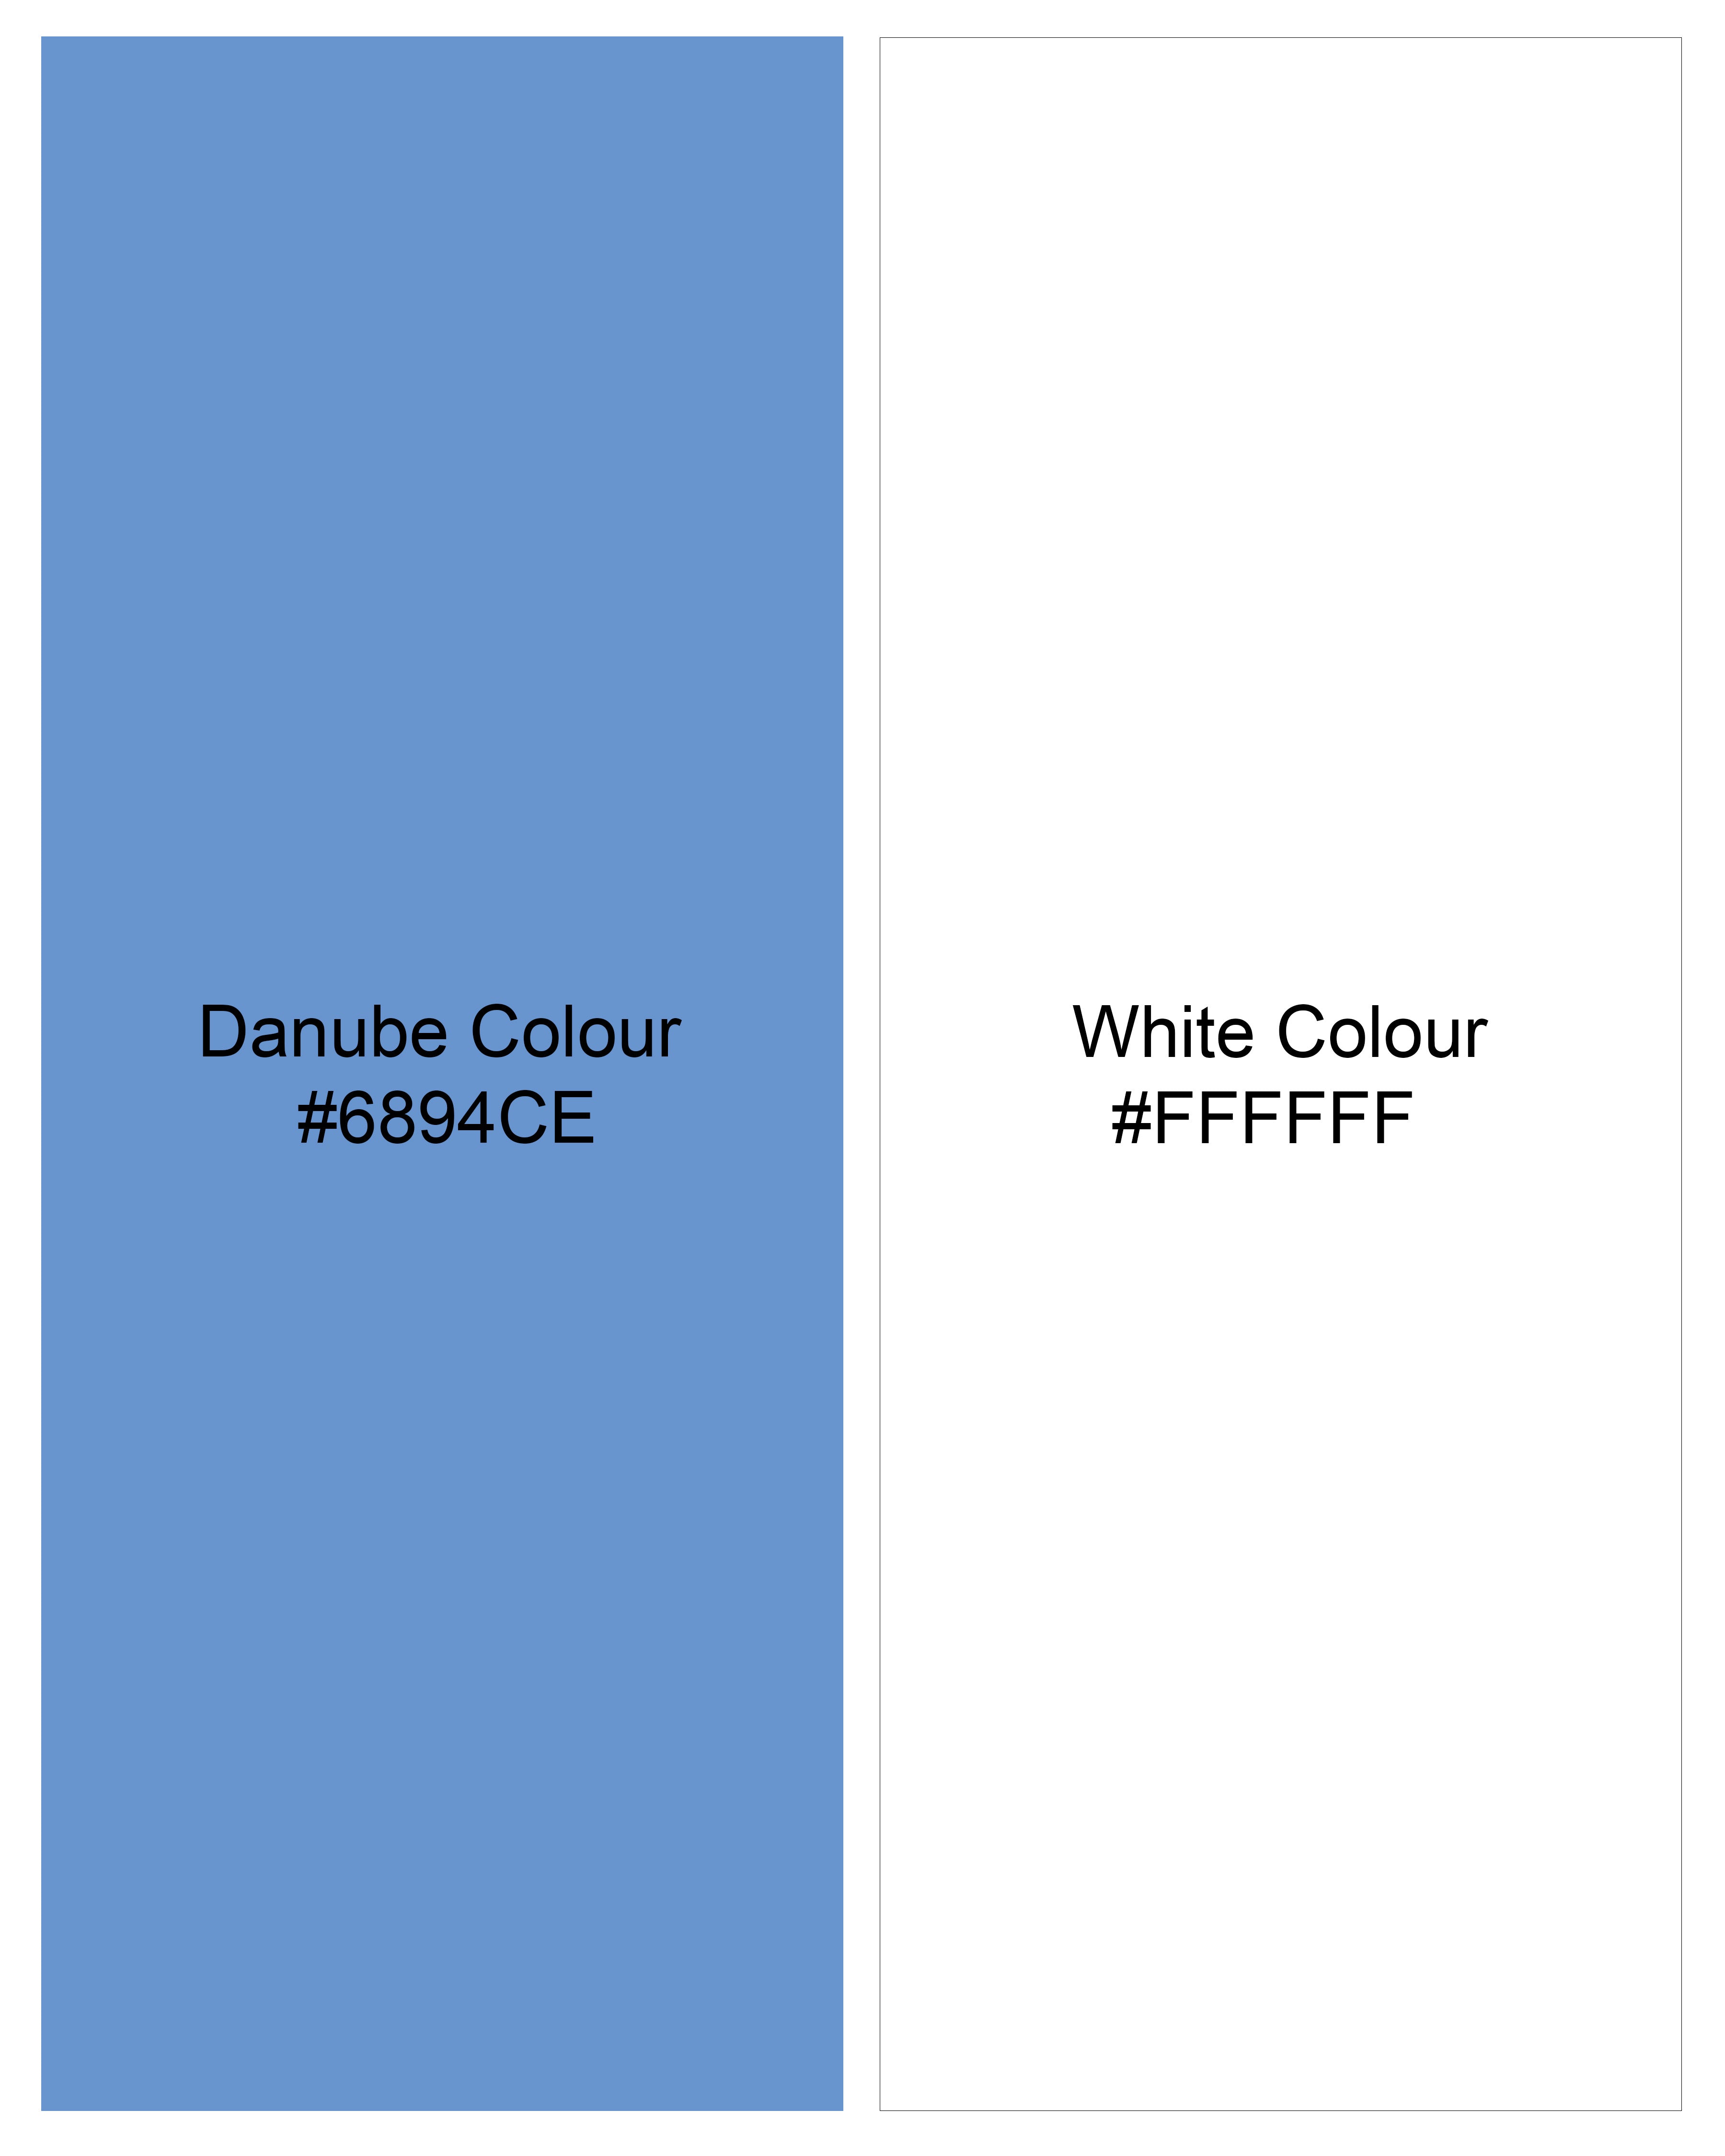 Danube Blue and White Striped Premium Cotton Shirt 9830-CA-38, 9830-CA-H-38, 9830-CA-39, 9830-CA-H-39, 9830-CA-40, 9830-CA-H-40, 9830-CA-42, 9830-CA-H-42, 9830-CA-44, 9830-CA-H-44, 9830-CA-46, 9830-CA-H-46, 9830-CA-48, 9830-CA-H-48, 9830-CA-50, 9830-CA-H-50, 9830-CA-52, 9830-CA-H-52